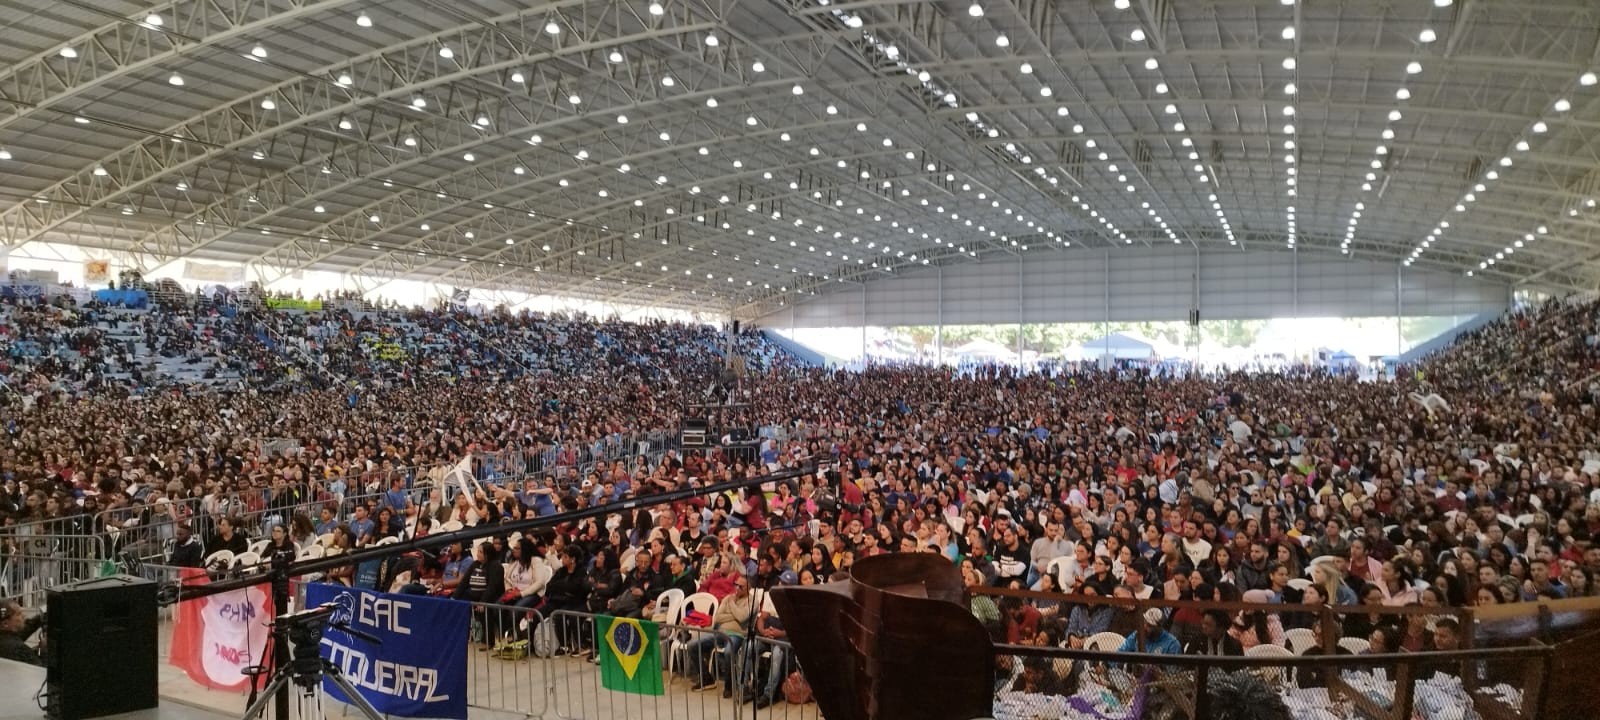 Acampamento católico espera reunir quase 30 mil pessoas na Festa de Pentecostes na Canção Nova, em Cachoeira Paulista, SP